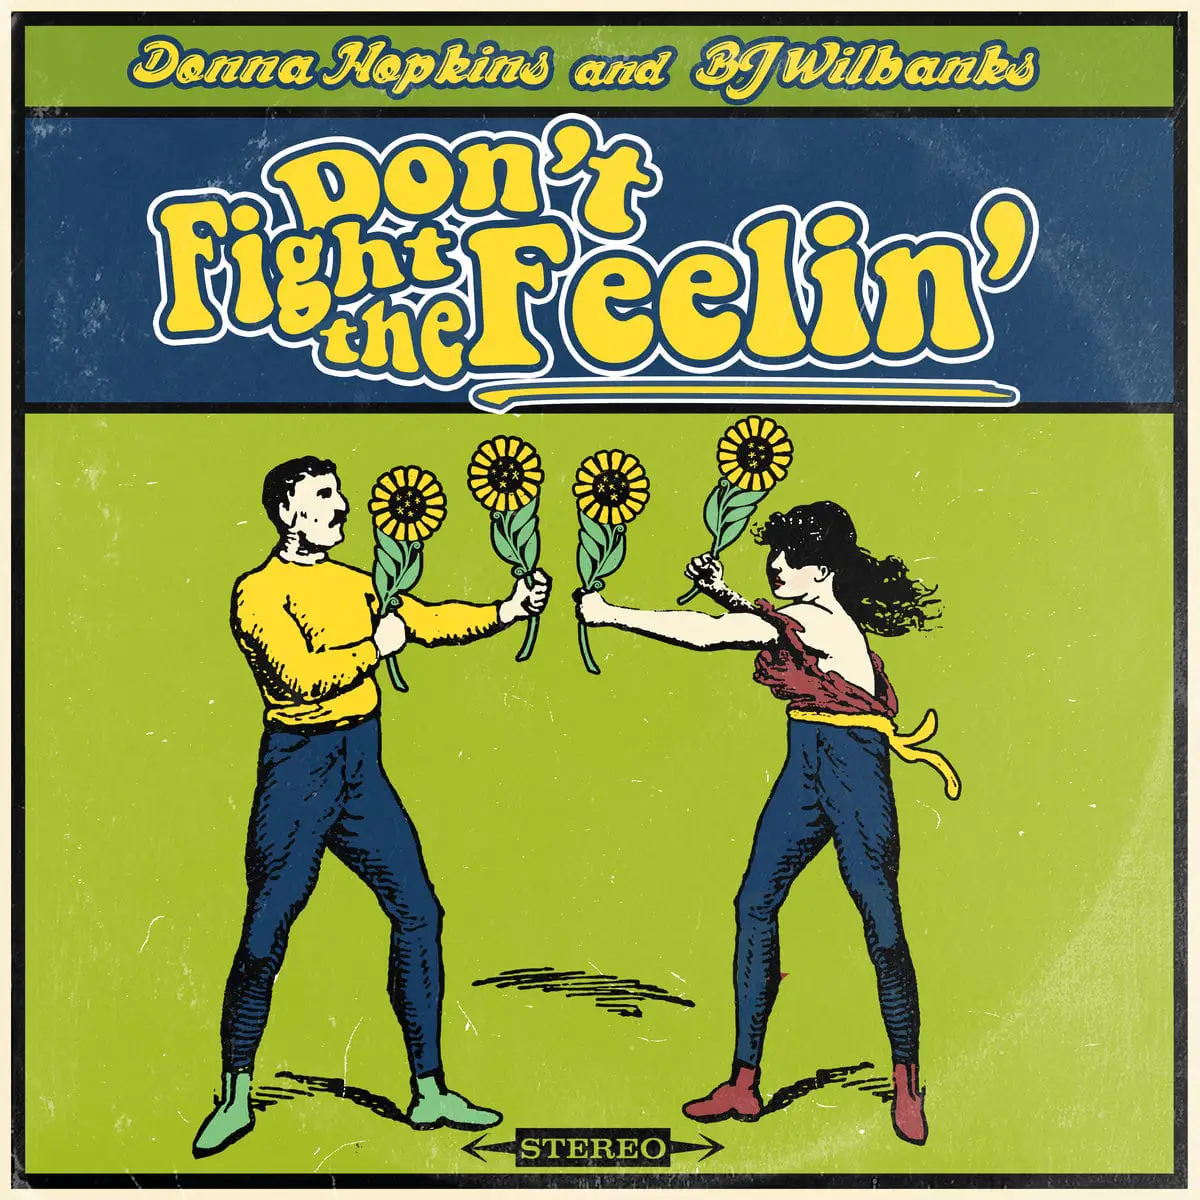 BJ Wilbanks - Don't Fight the Feelin'